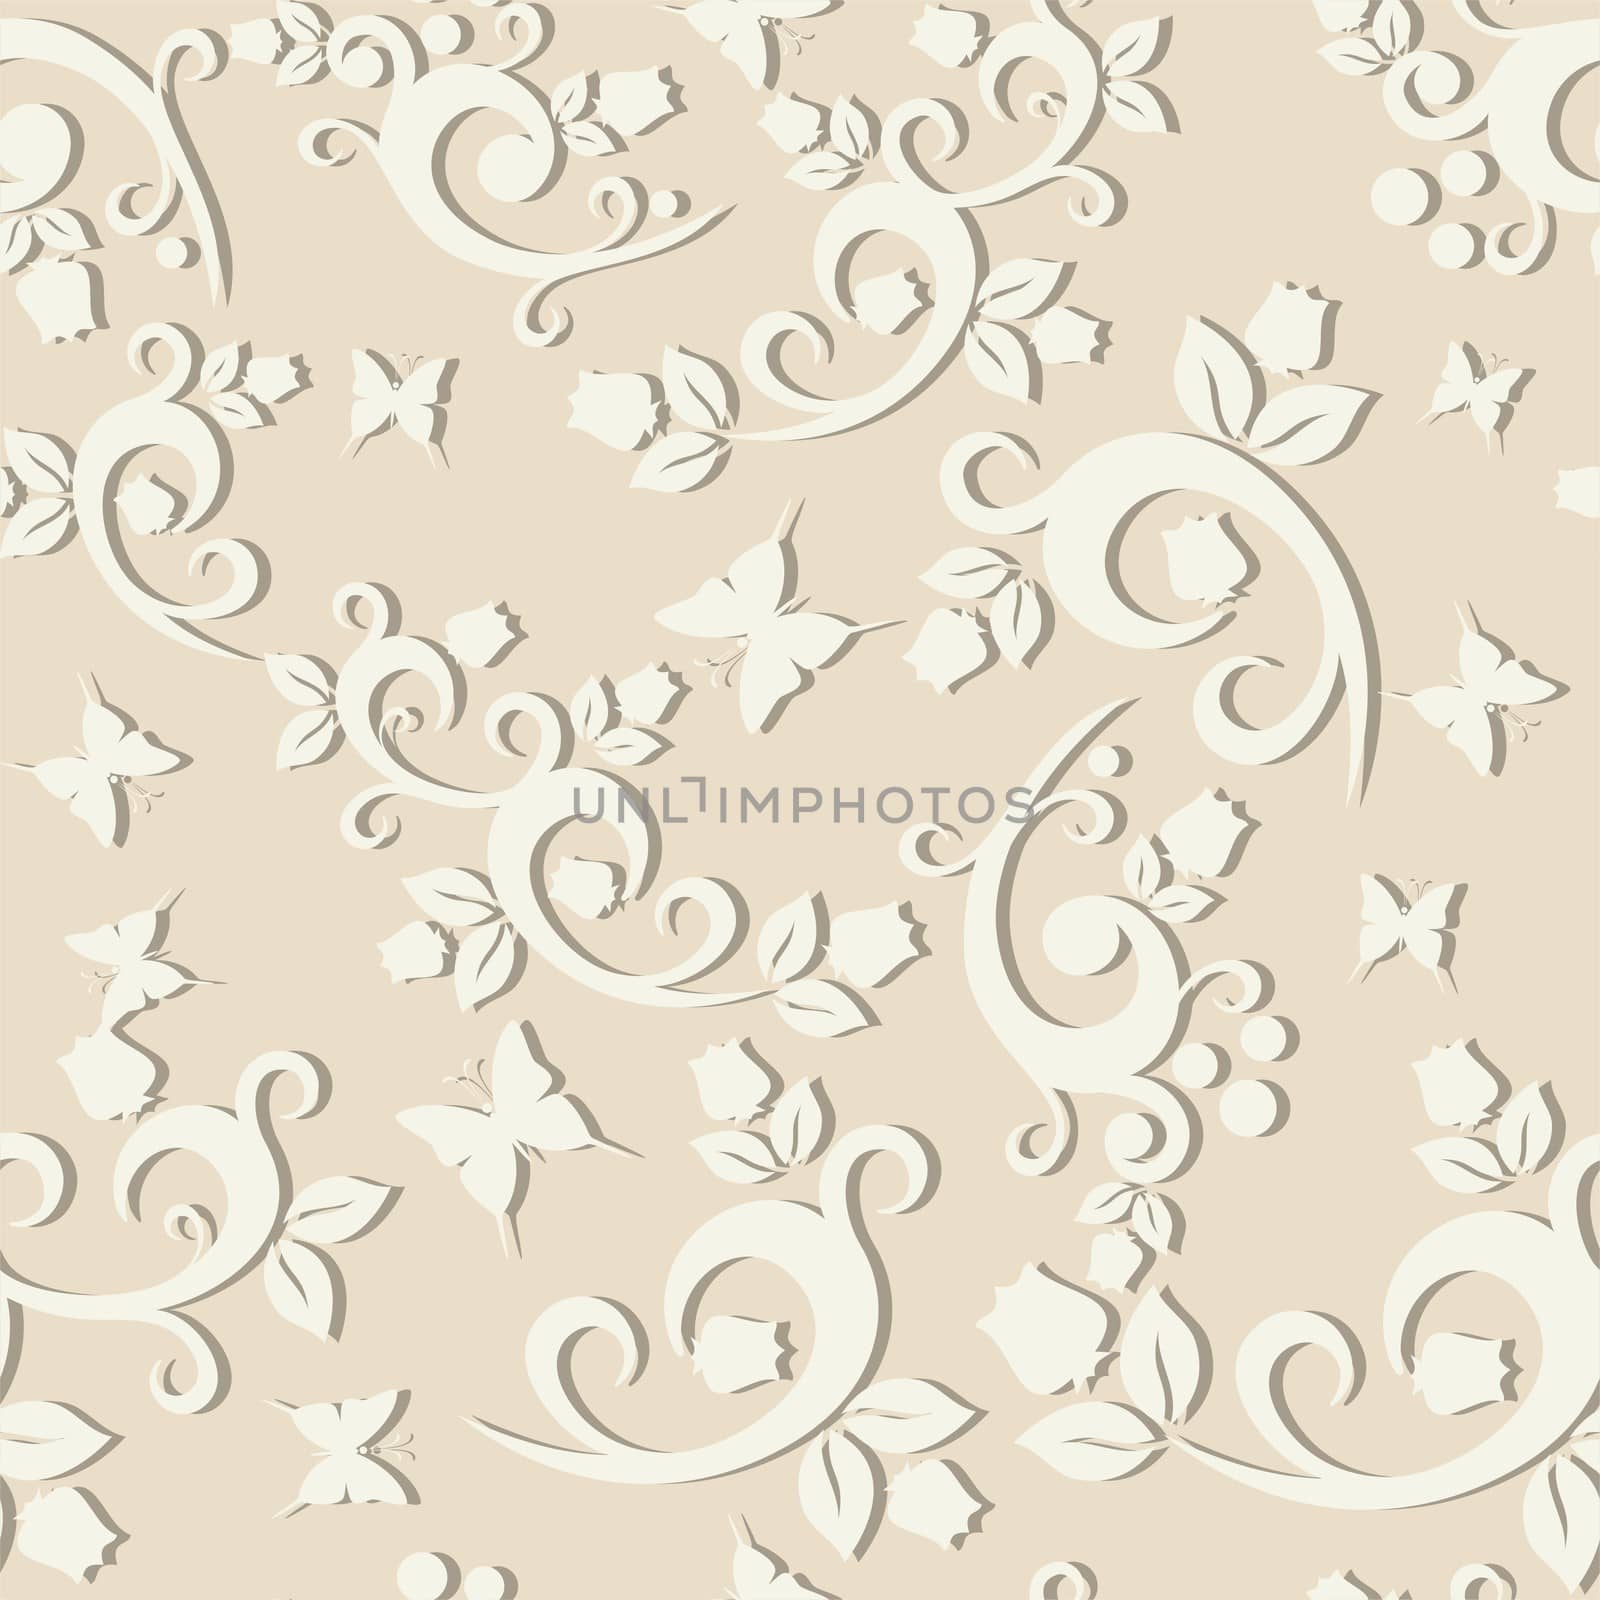 elegant floral vintage seamless pattern background for your design by svtrotof